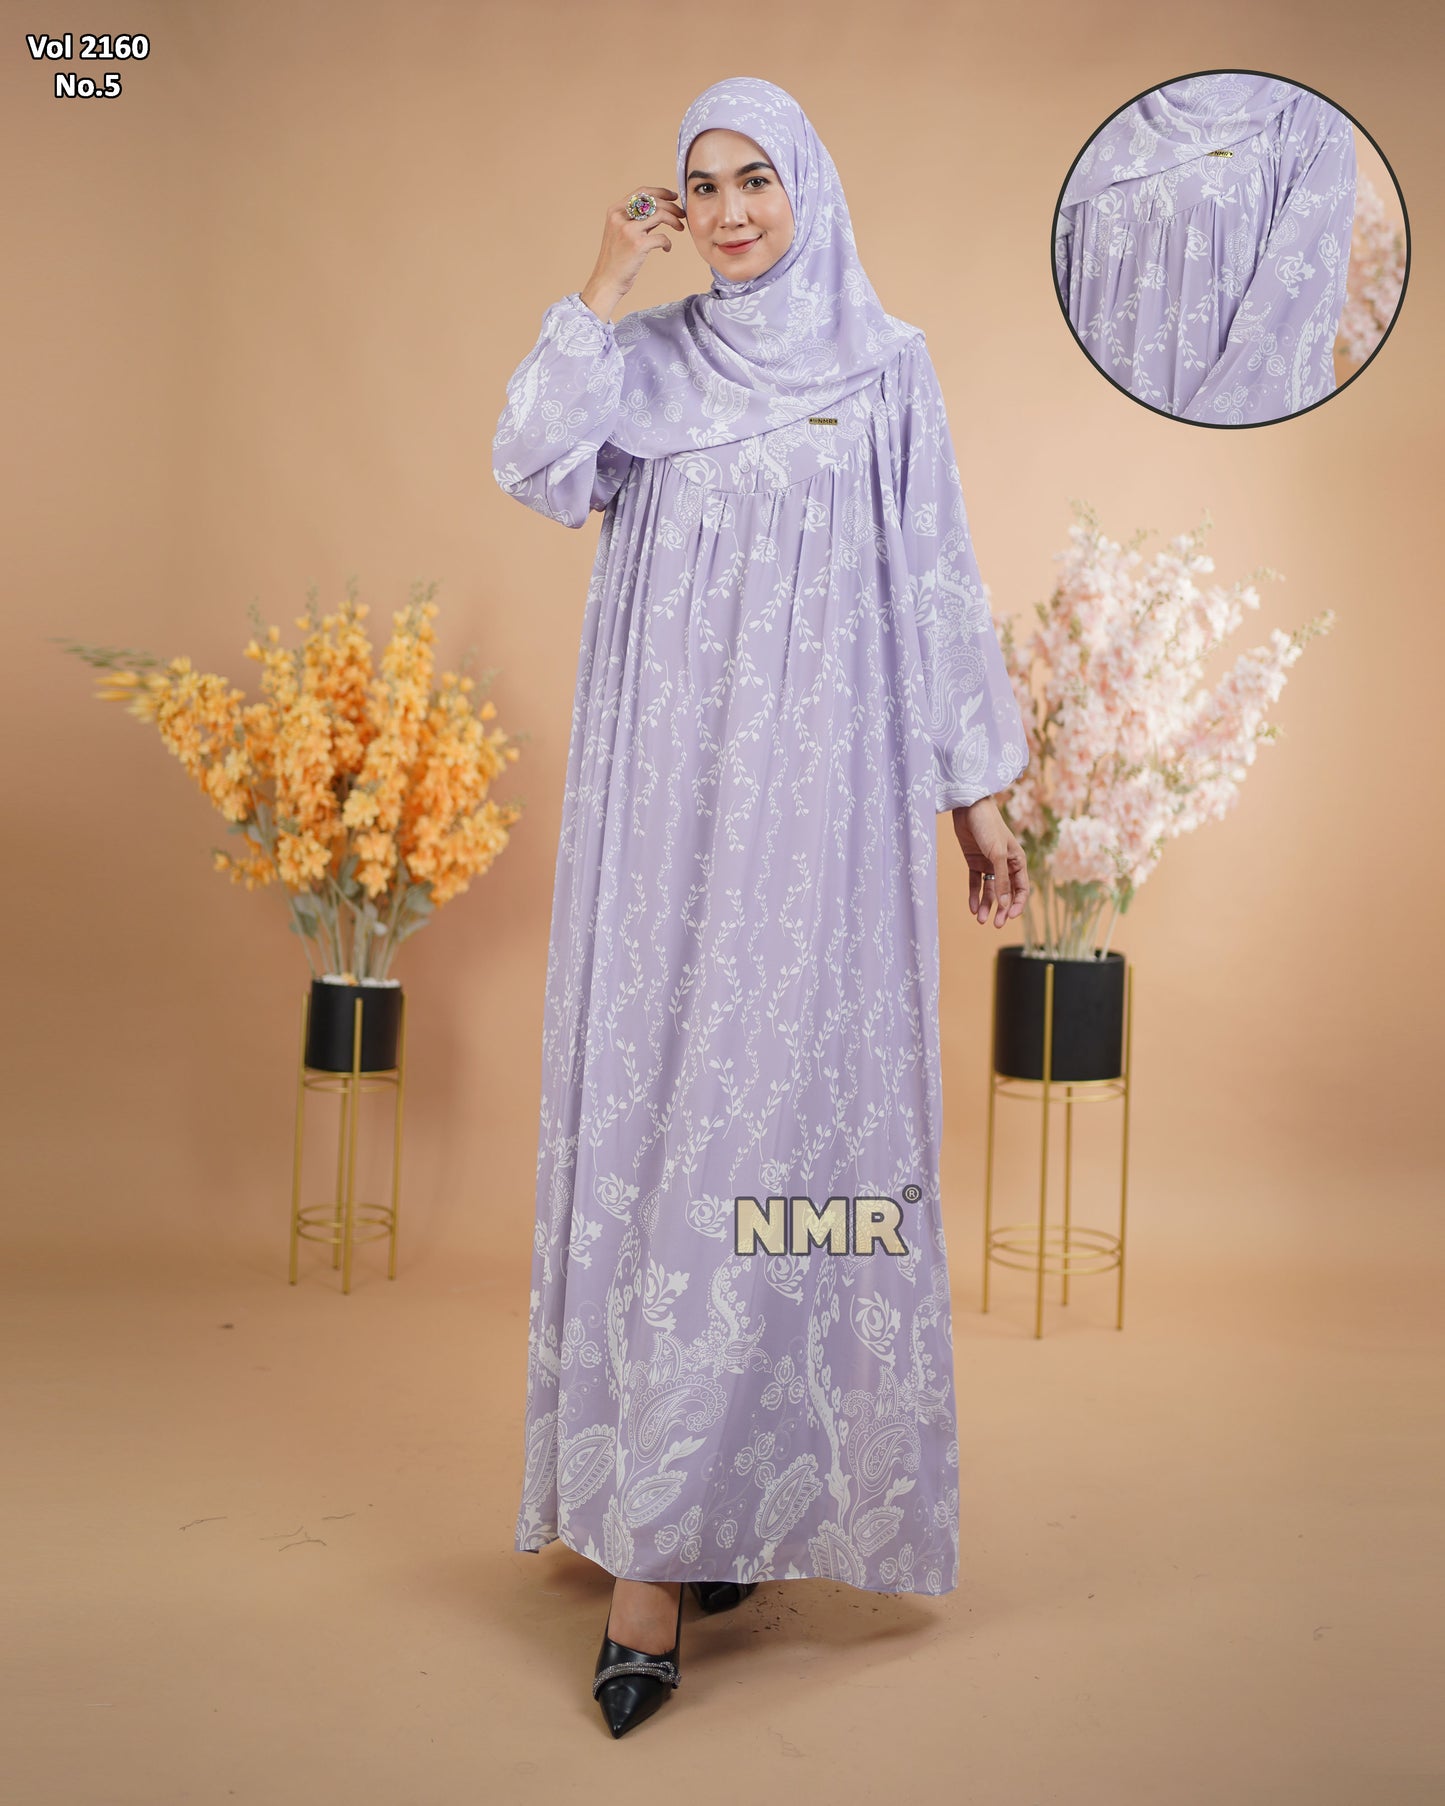 NMR Gamis Cerutty BabyDoll Premium Vol 2160-5 ( INC Hijab )